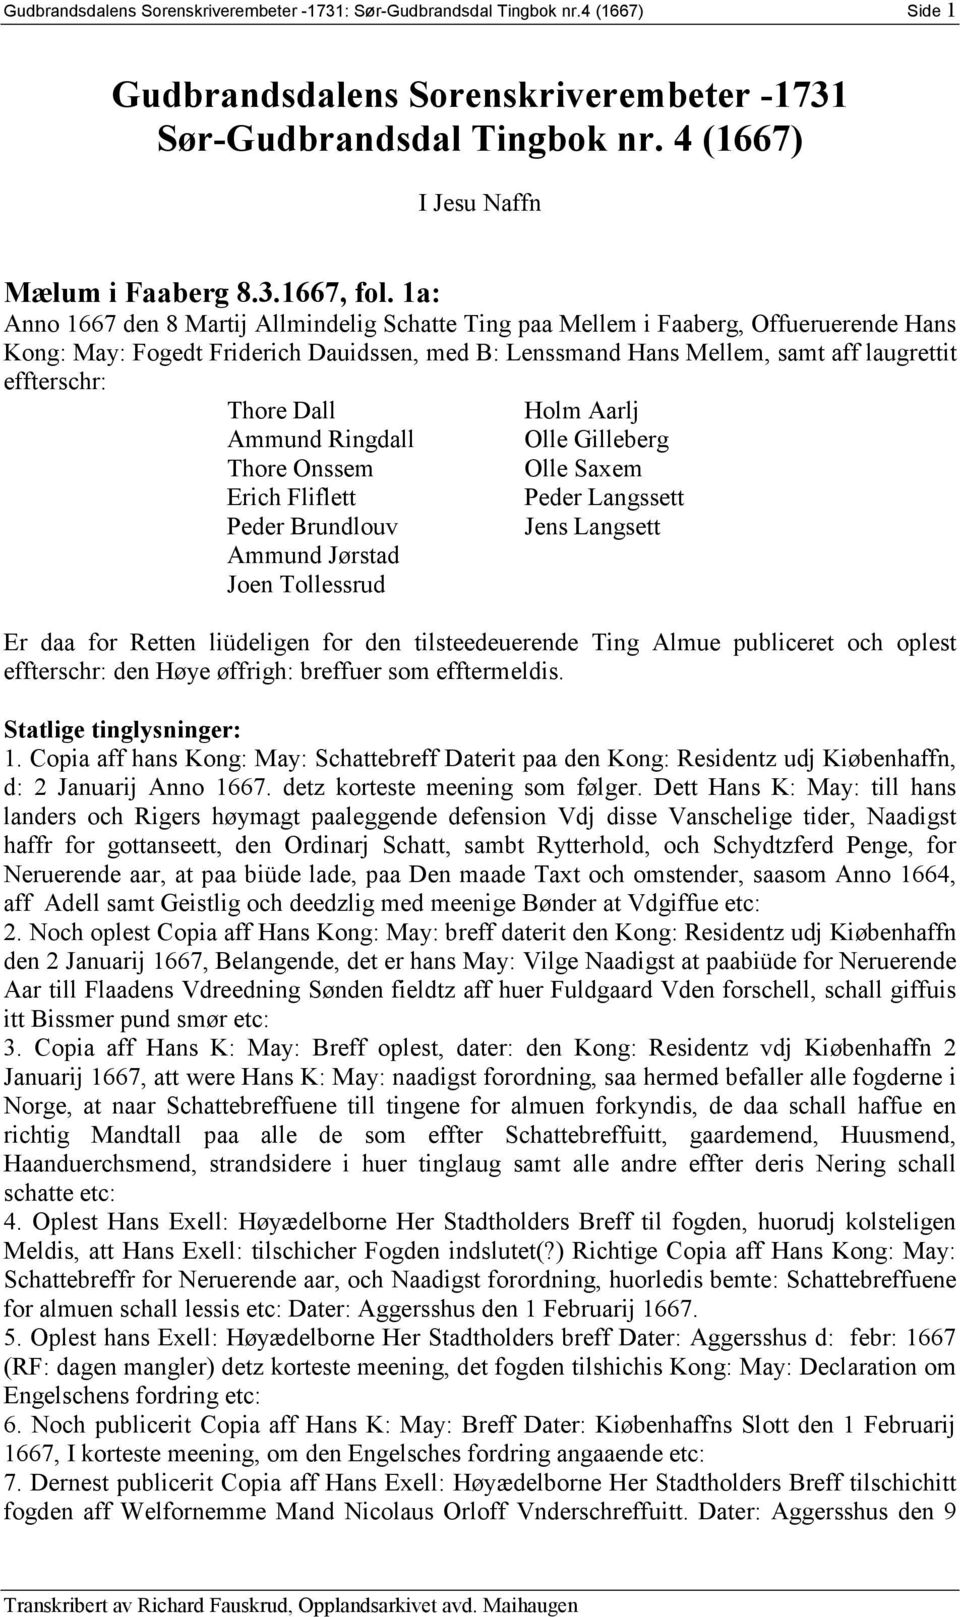 Gudbrandsdalens Sorenskriverembeter Sør-Gudbrandsdal Tingbok nr. 4 (1667) -  PDF Gratis download